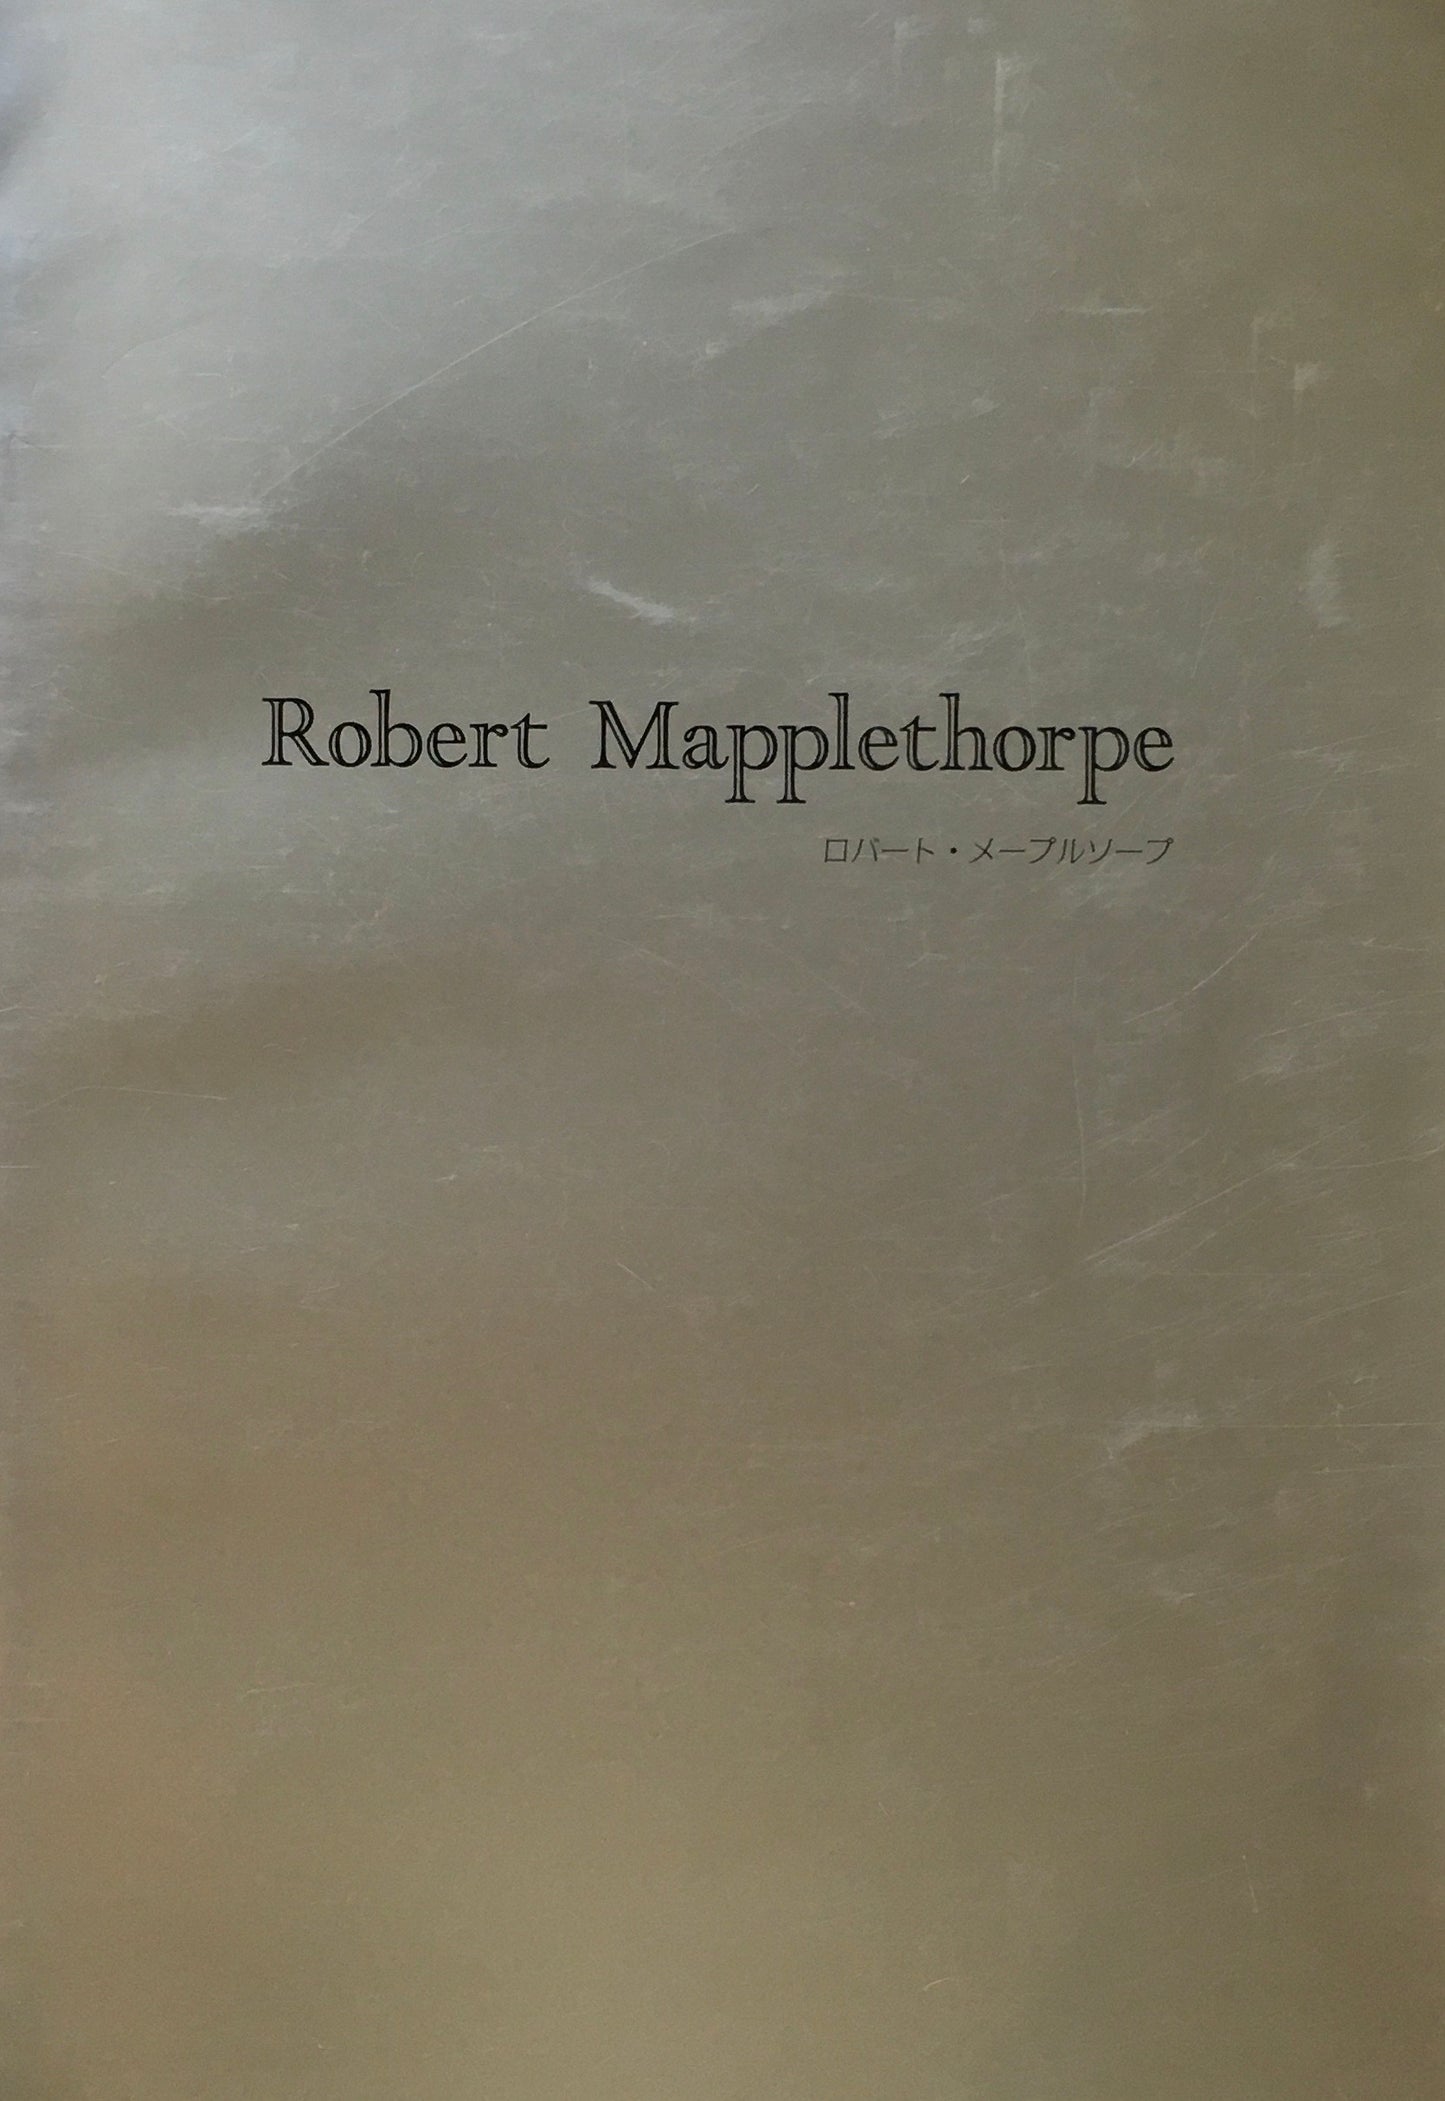 ロバート・メイプルソープ　Robert Mapplethorpe　ギャラリーハイベル